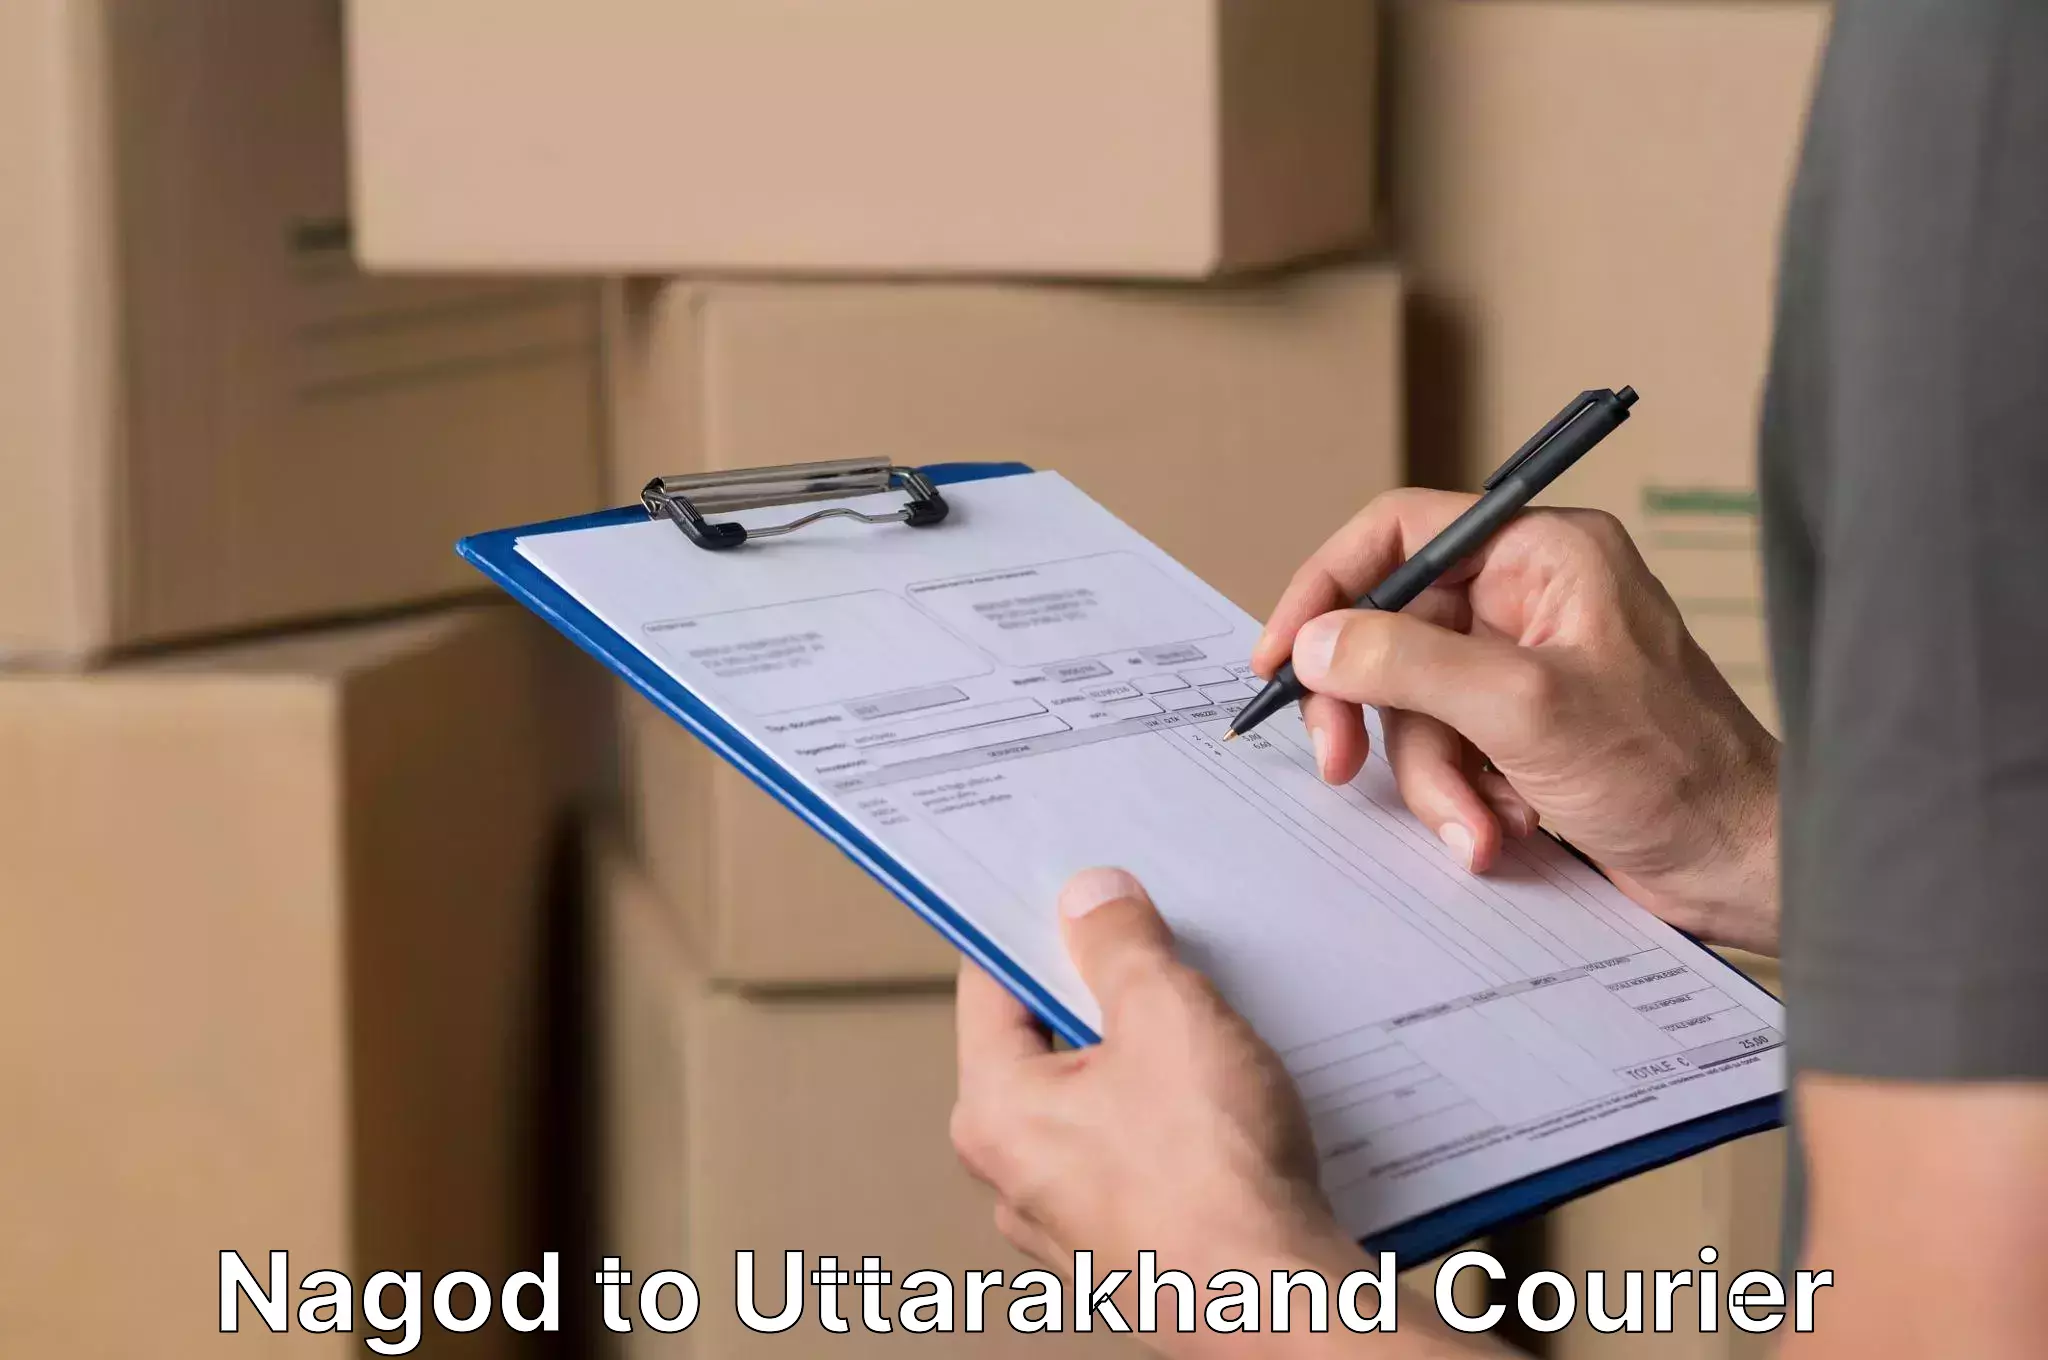 Professional movers Nagod to Uttarakhand